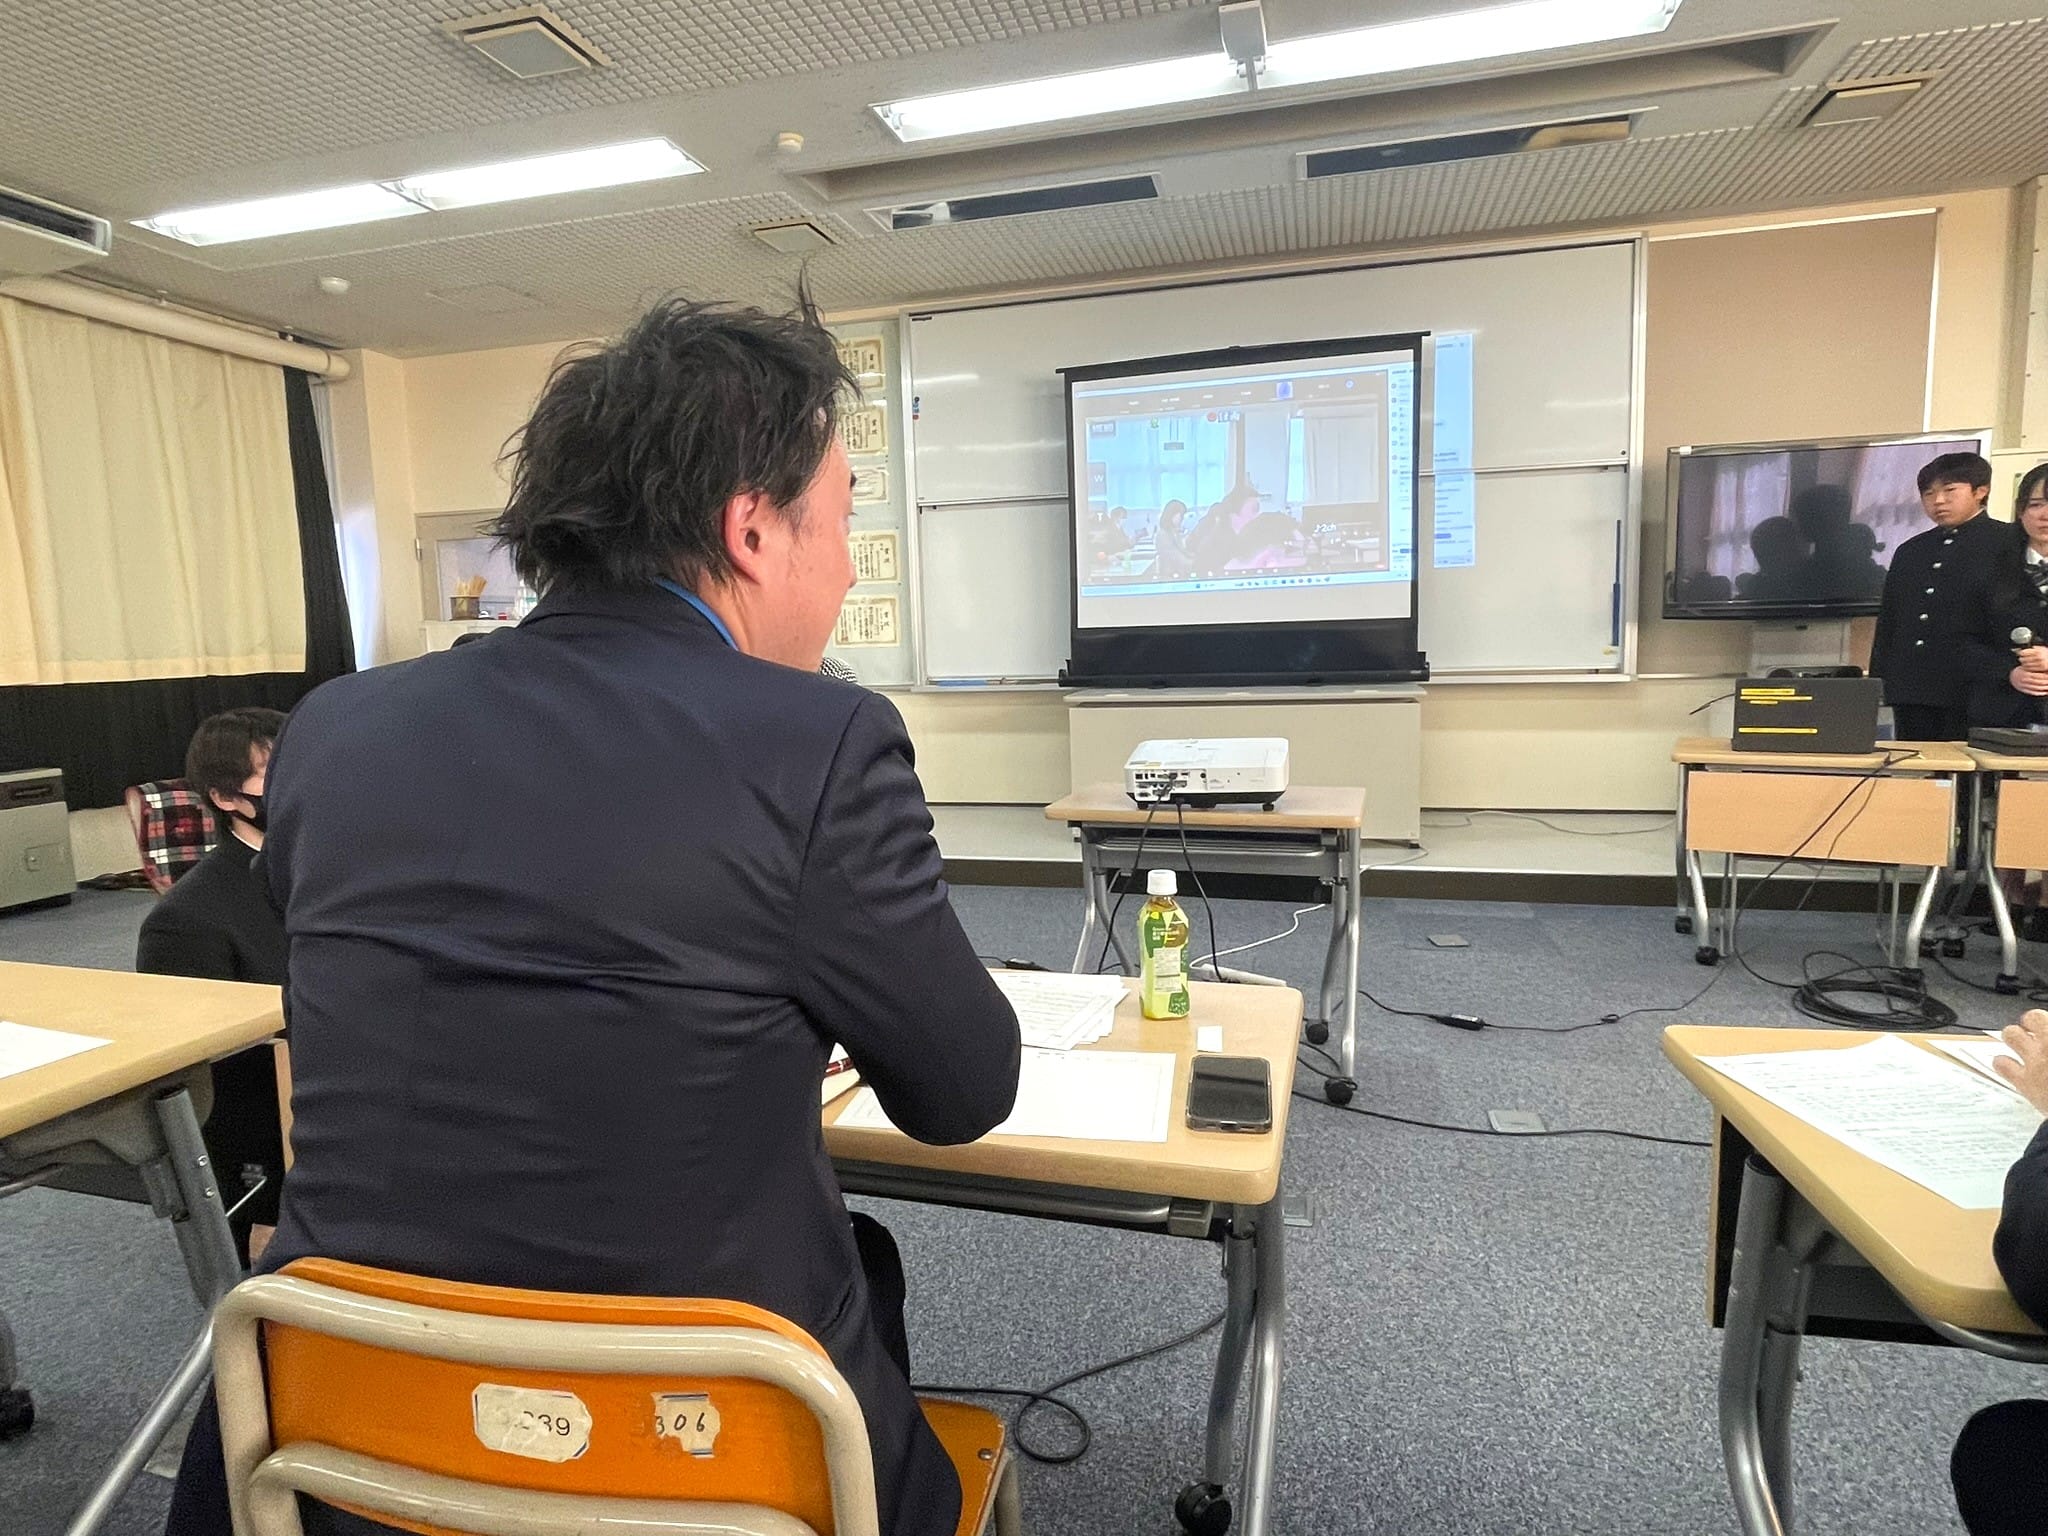 令和6年3月４日(月)、栃木県立佐野高校で行われた「SG課題研究成果発表会」に、本学の教職員5名が指導助言者として参加しました。